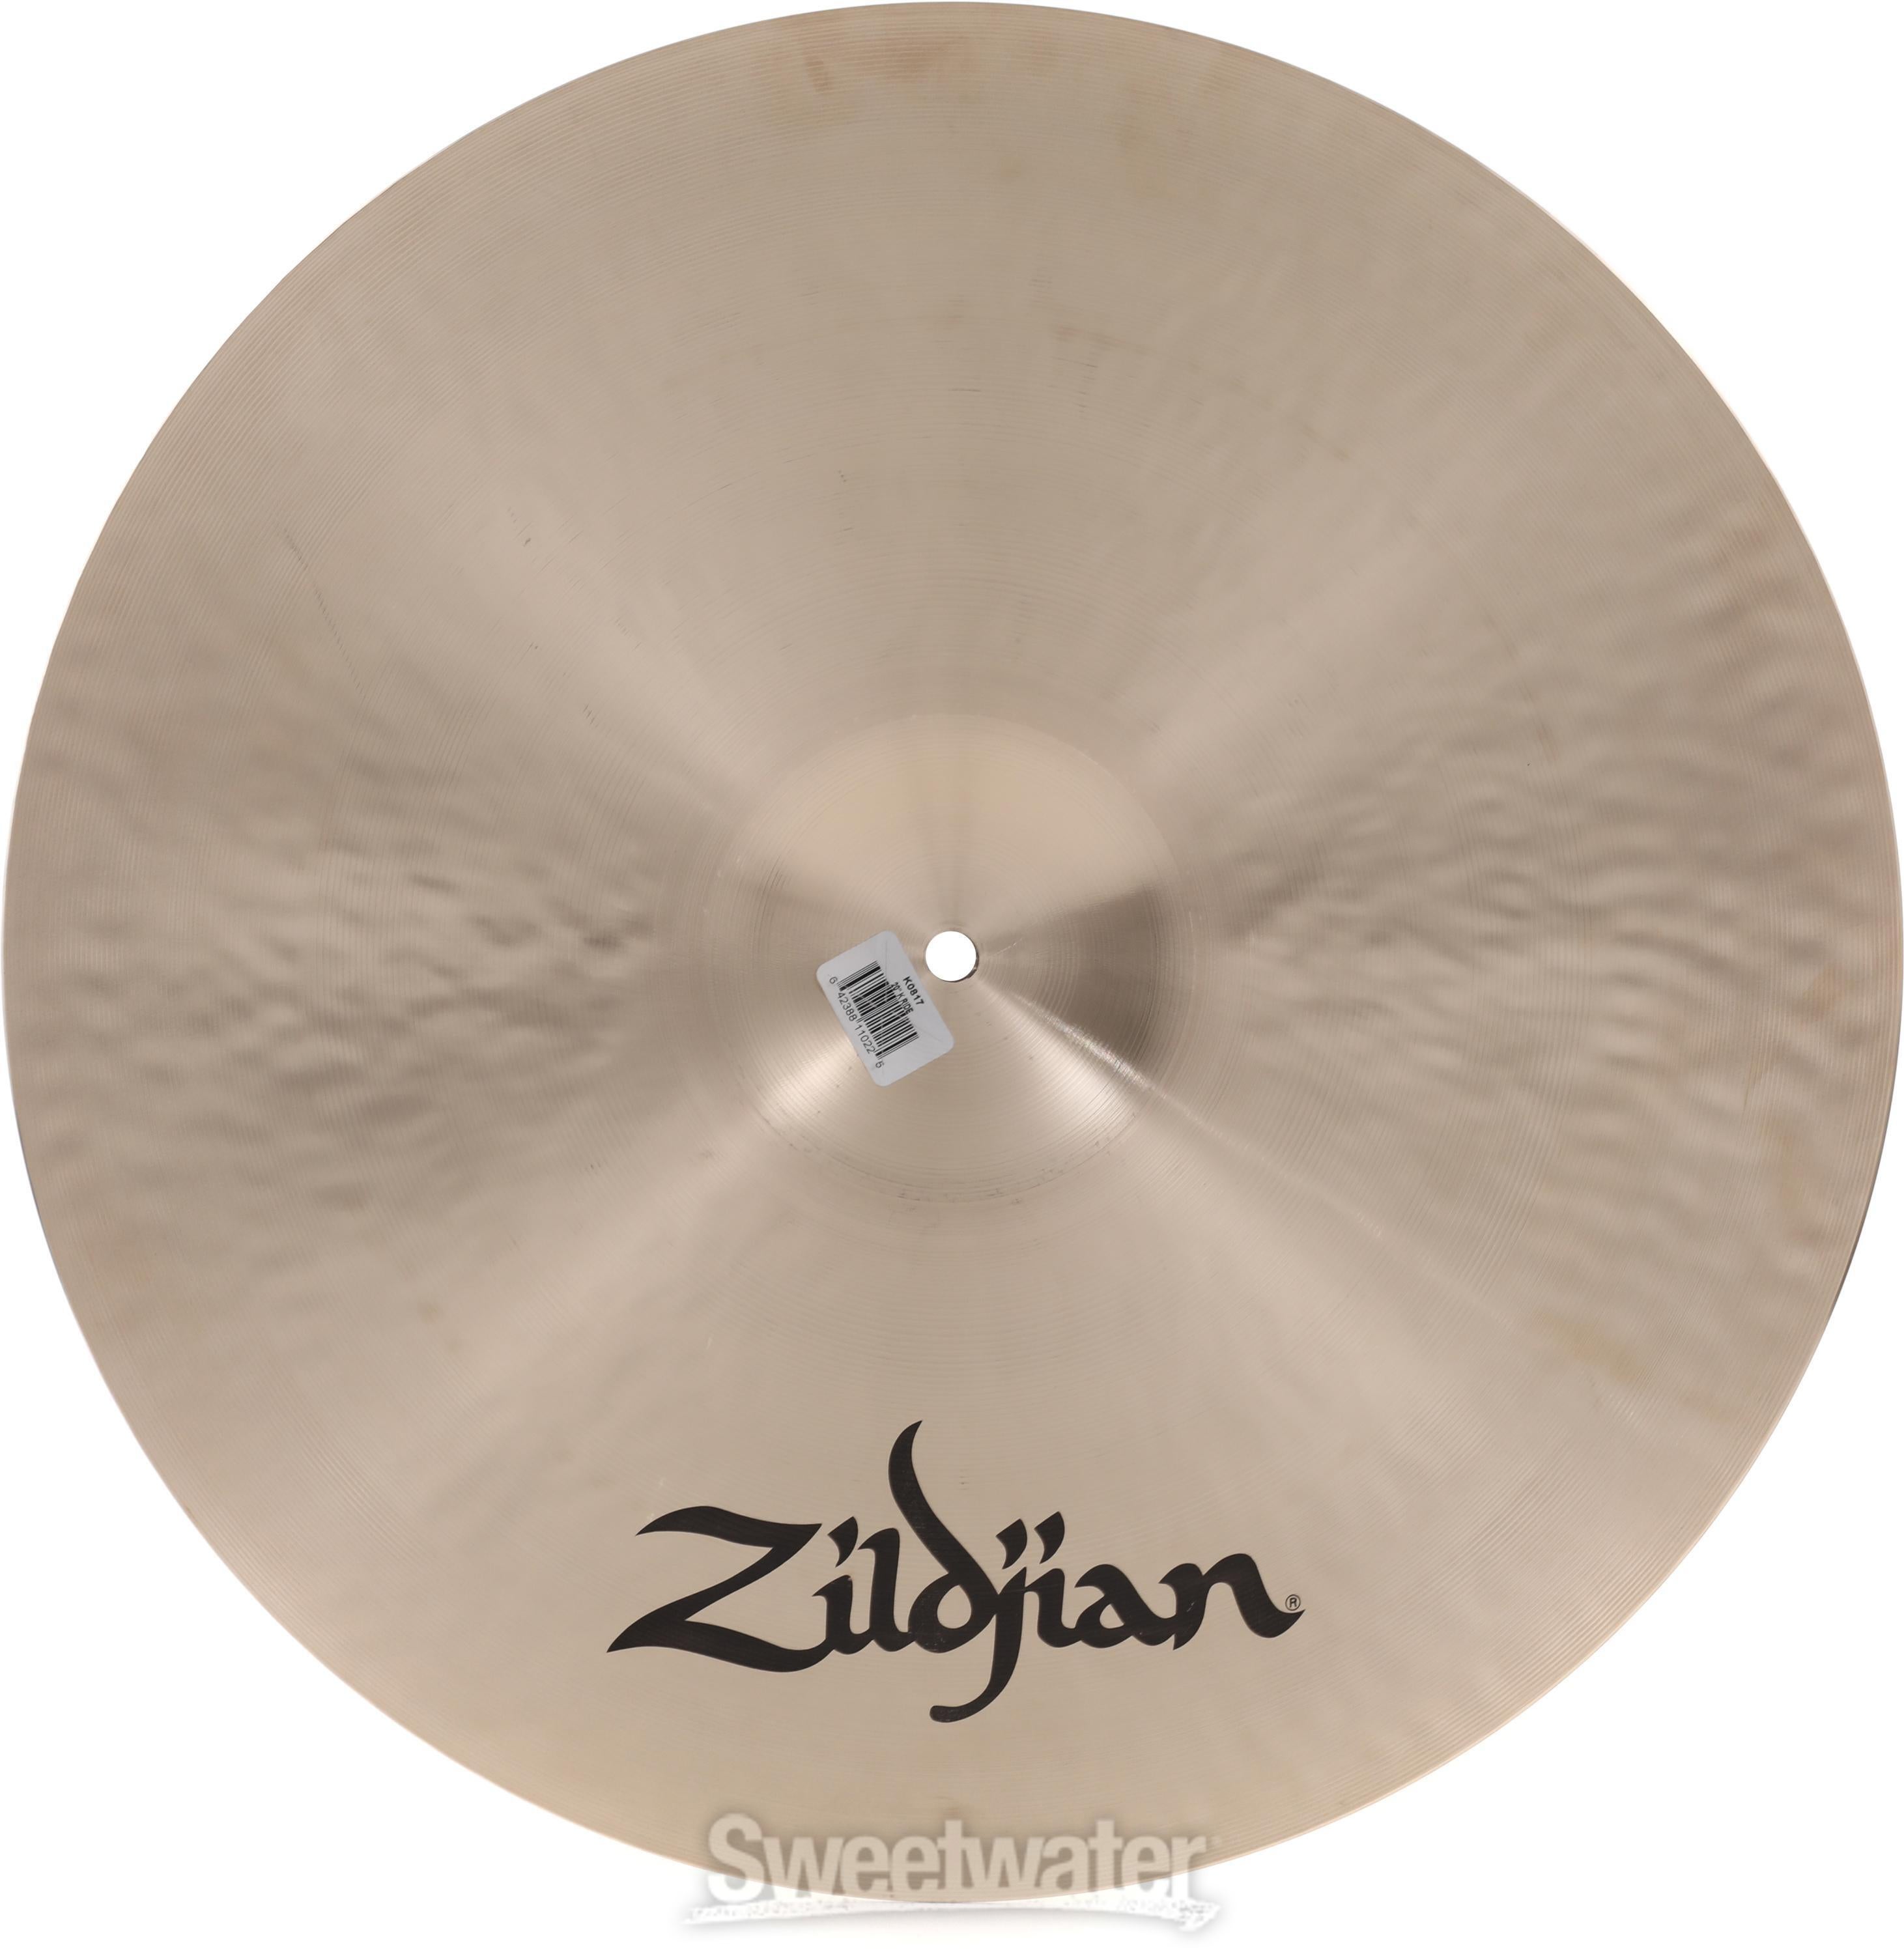 Zildjian 20 inch K Zildjian Ride Cymbal